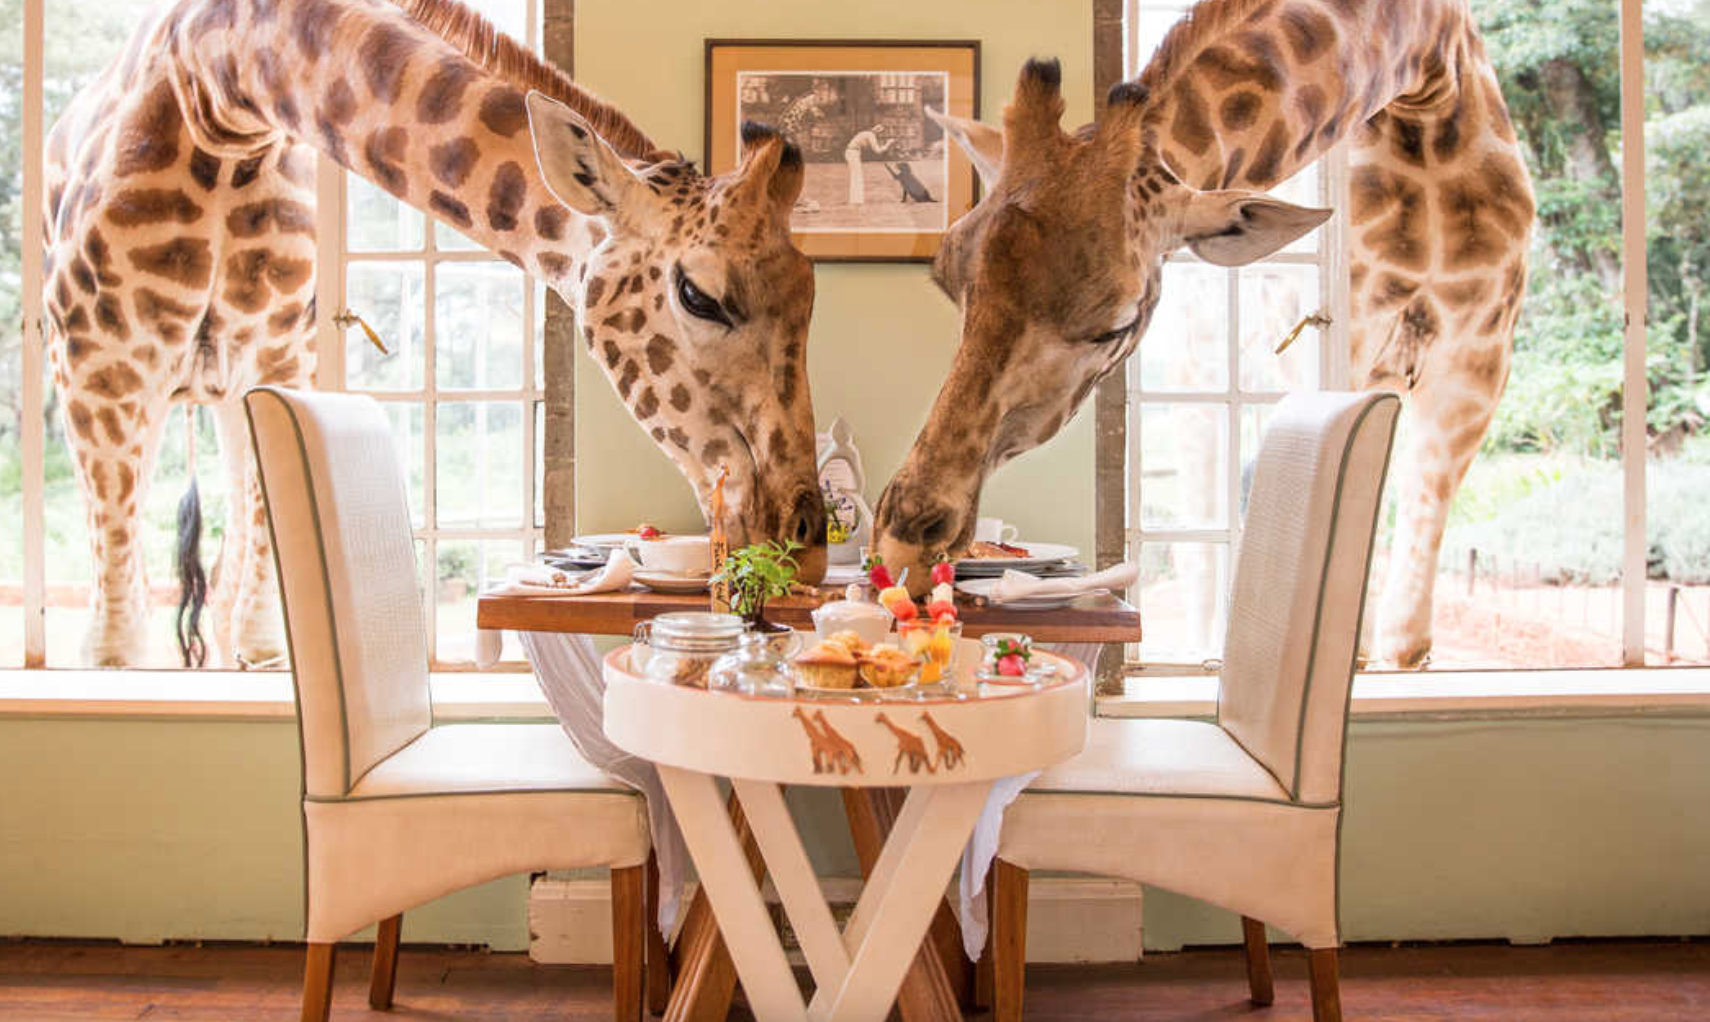 Giraffe Lodge